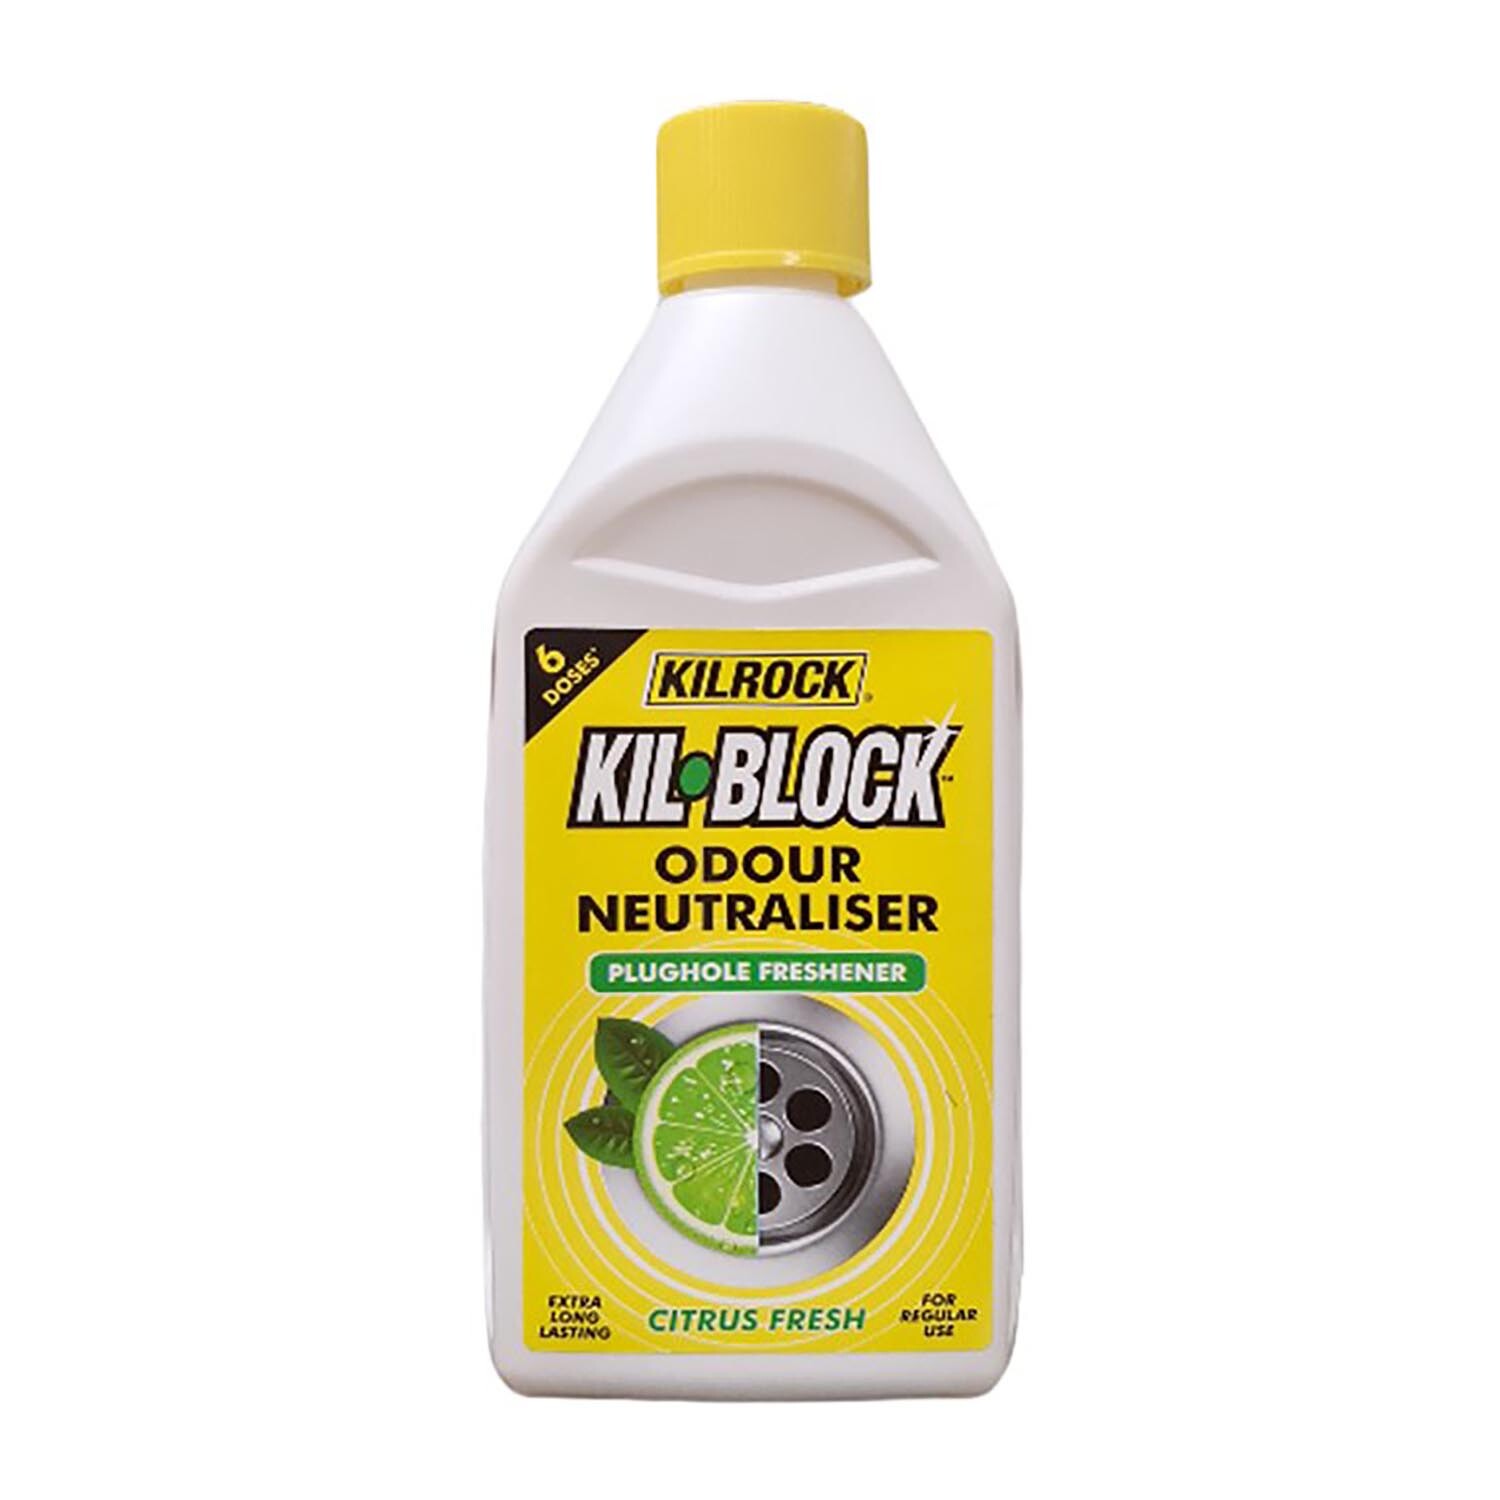 Kil Block Odour Neutraliser Plughole Freshener Image